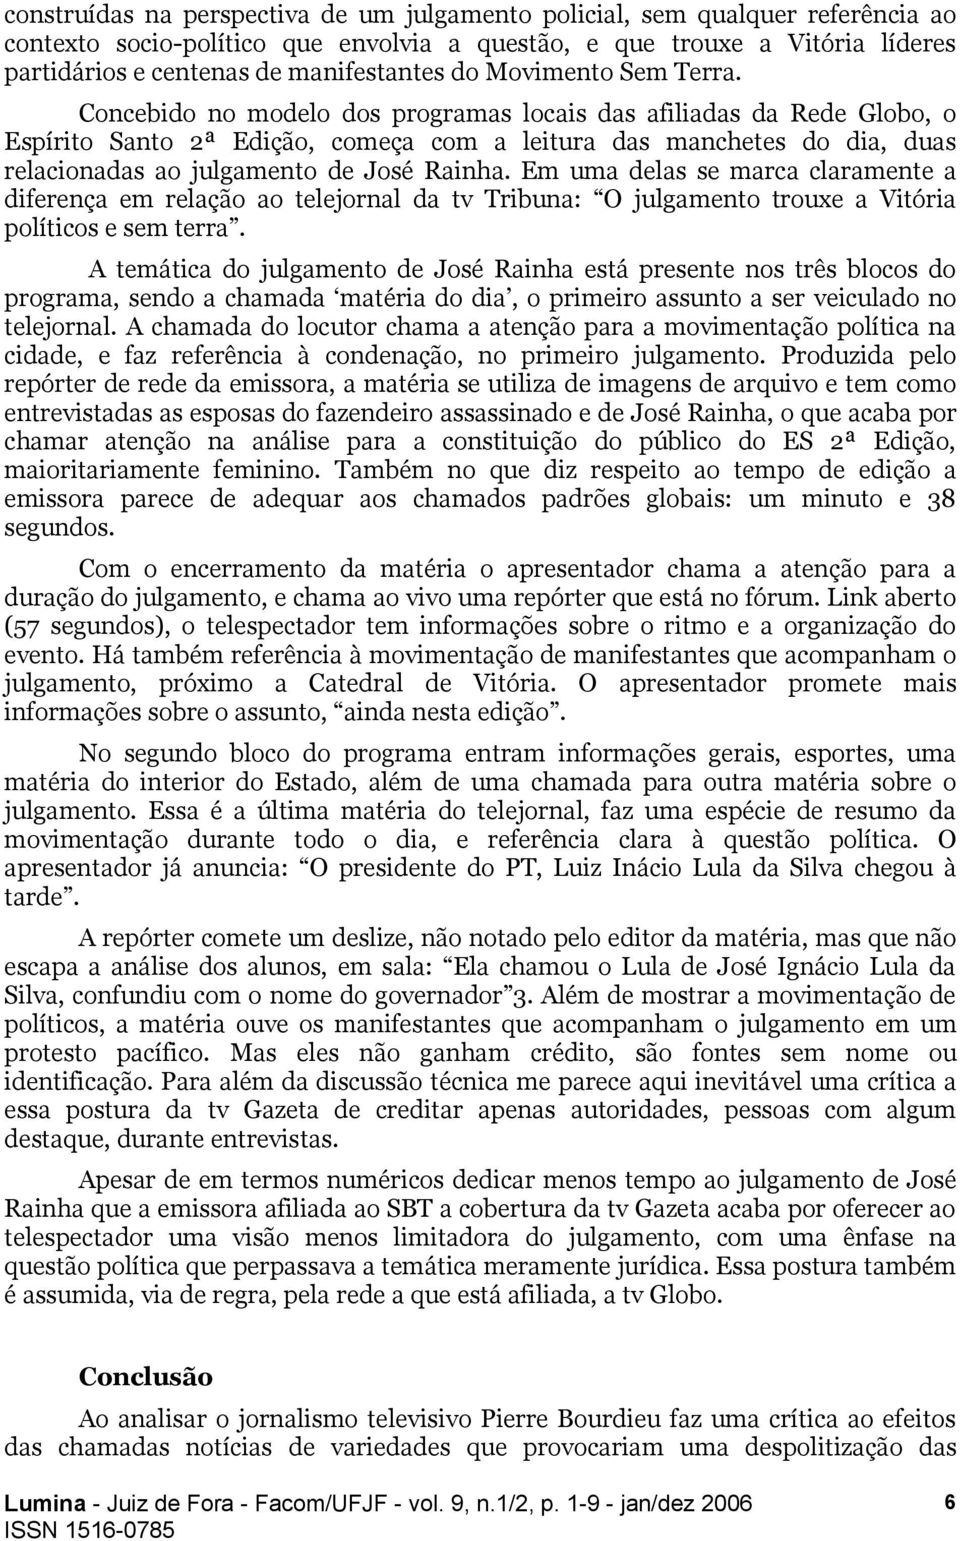 Concebido no modelo dos programas locais das afiliadas da Rede Globo, o Espírito Santo 2ª Edição, começa com a leitura das manchetes do dia, duas relacionadas ao julgamento de José Rainha.